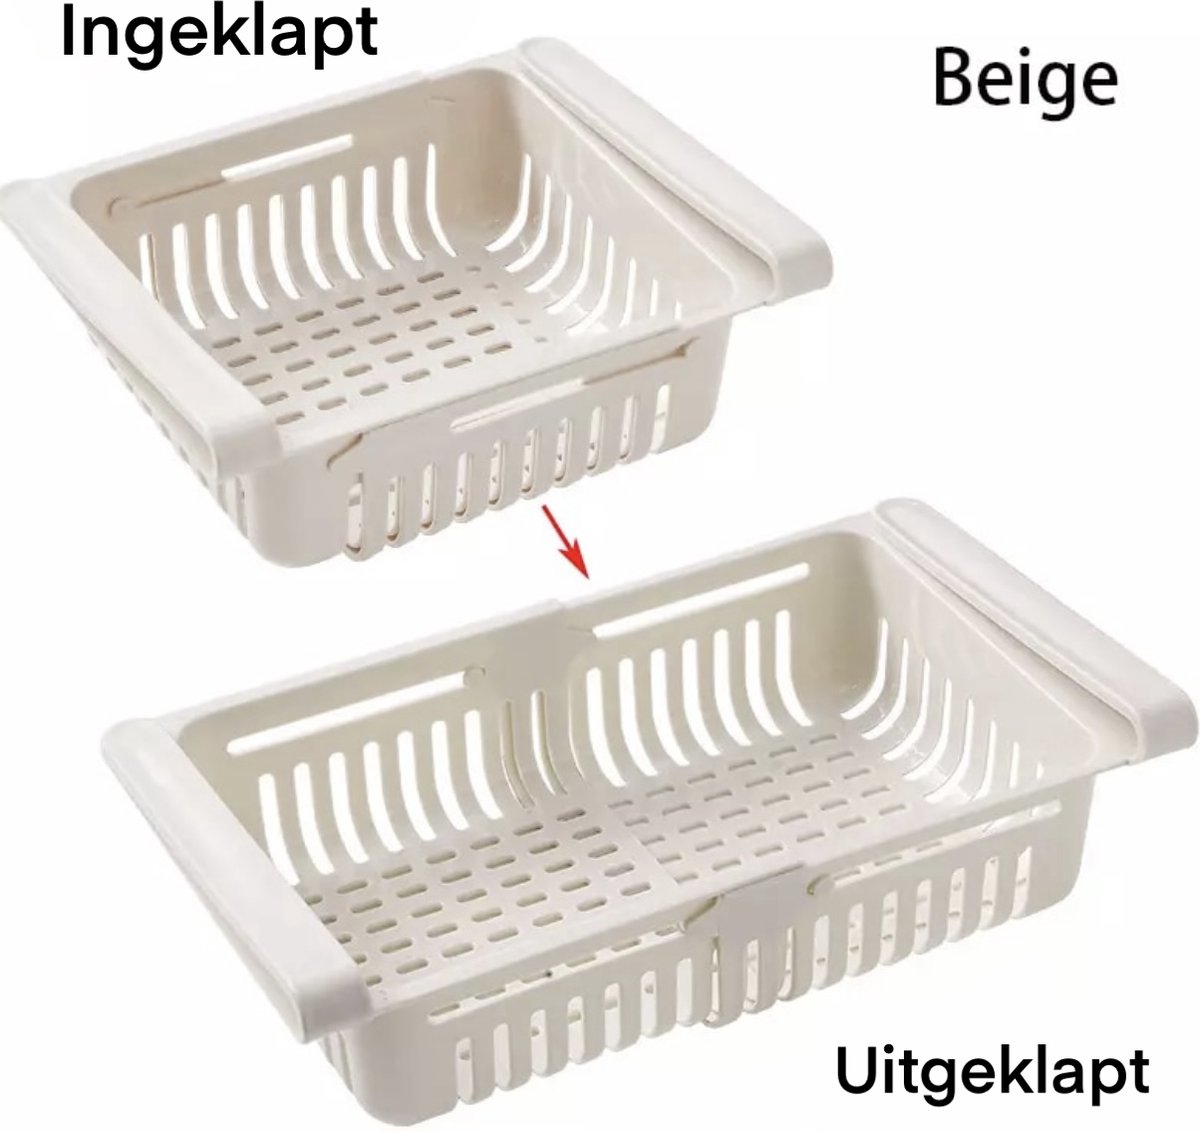 Koelkast organizer - Beige - verstelbaar - extra lade in koelkast - opbergdoos